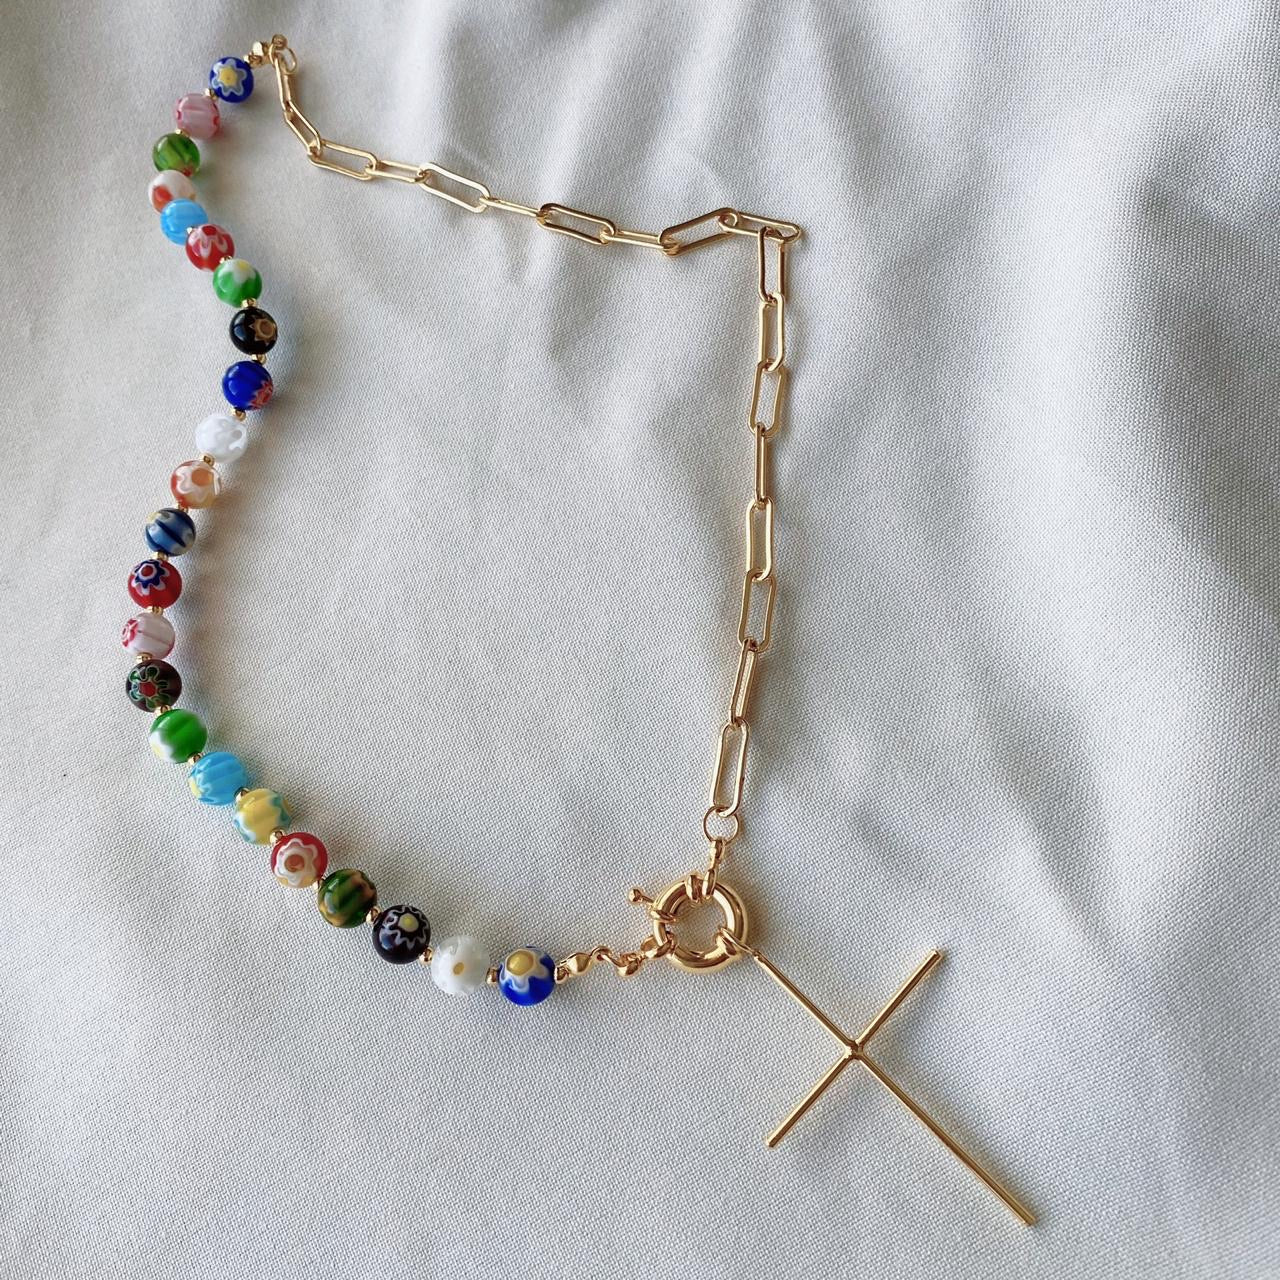 Millefiori cross necklace